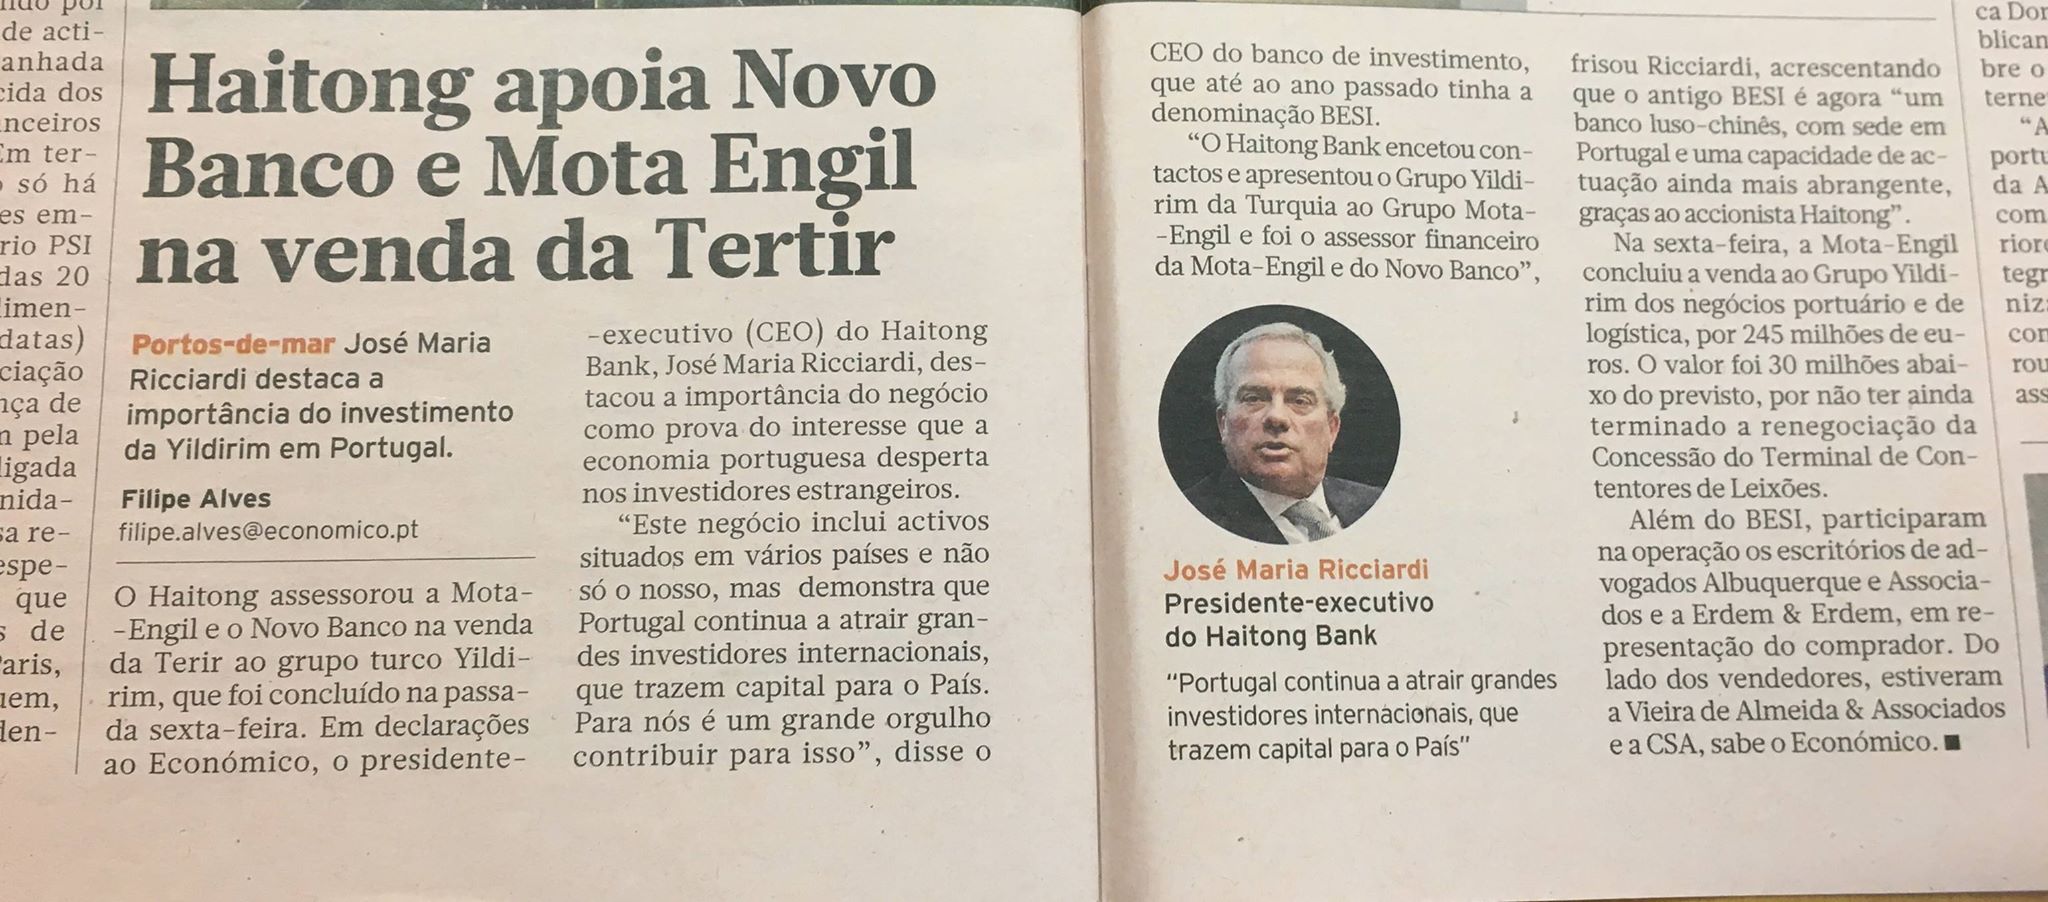 <p>Fonte: Diário Económico</p>